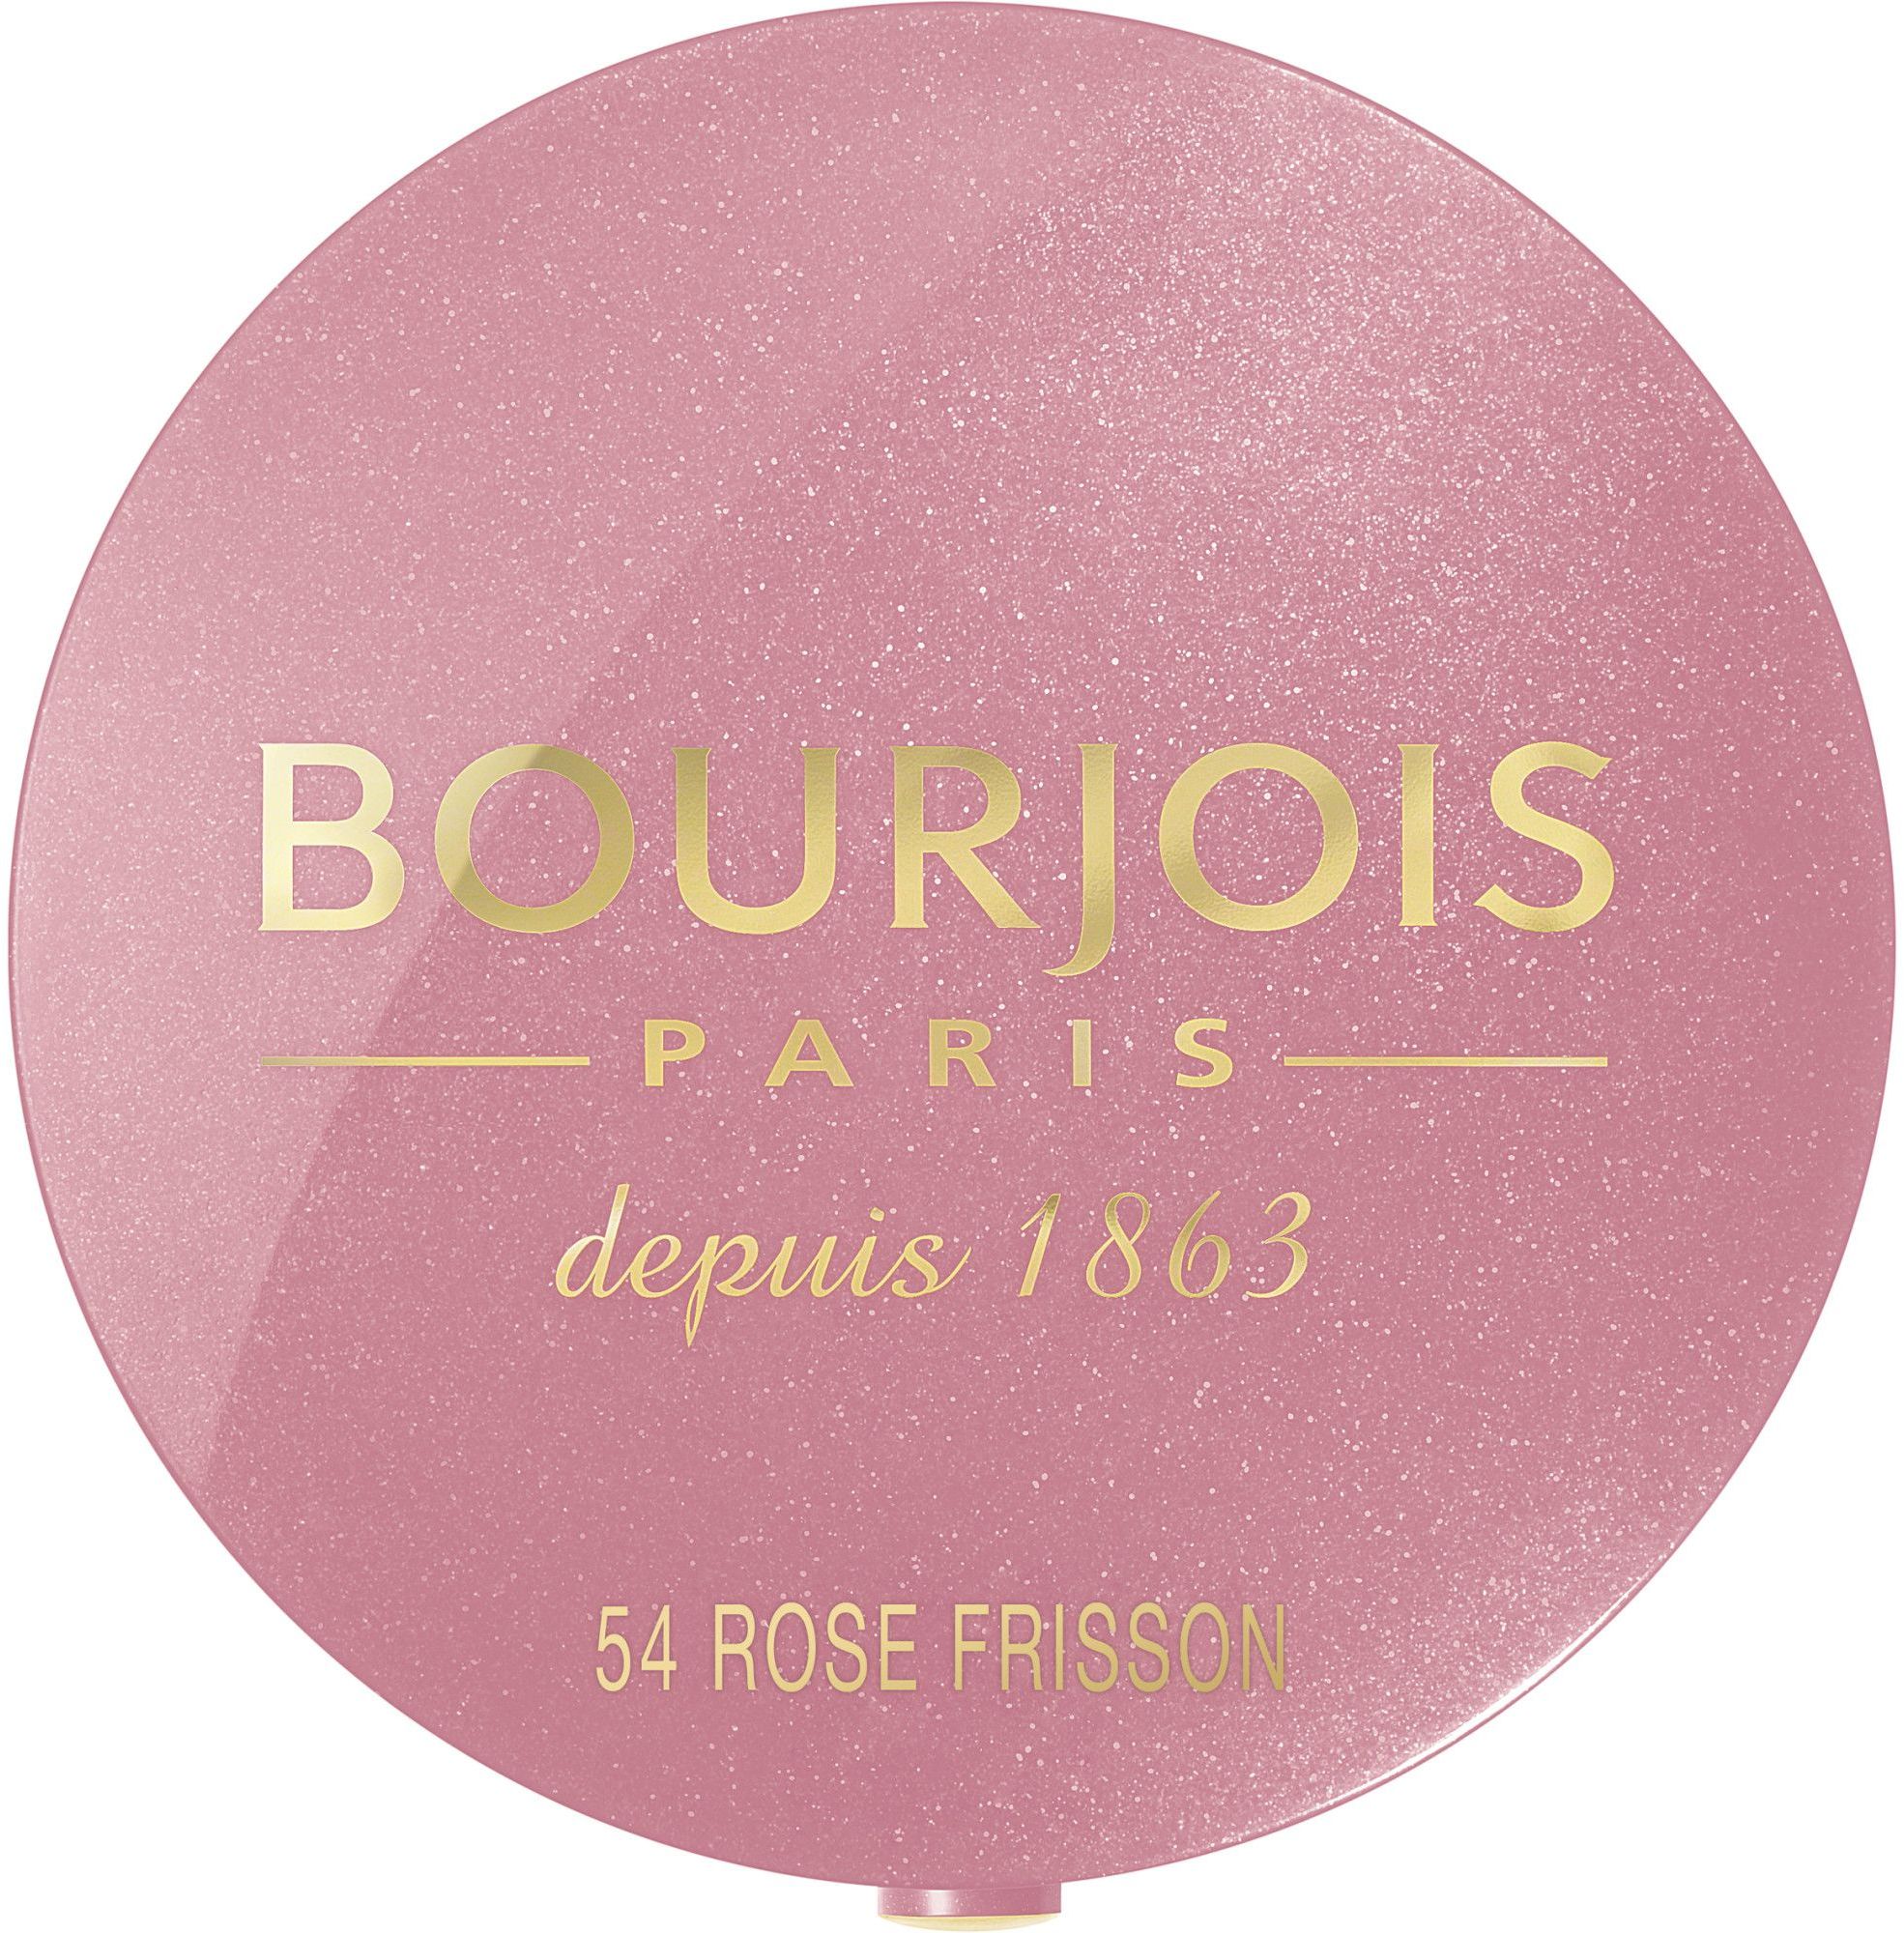 Bourjois Paris Little Round Pot Blusher – blush pentru obraji roz 54 Rose Frisson 2.5 g Bourjois Paris Little Round Pot Blusher este un blush roz pentru obraji în nuanța 54 Rose Frisson, cu o greutate de 2.5 g.